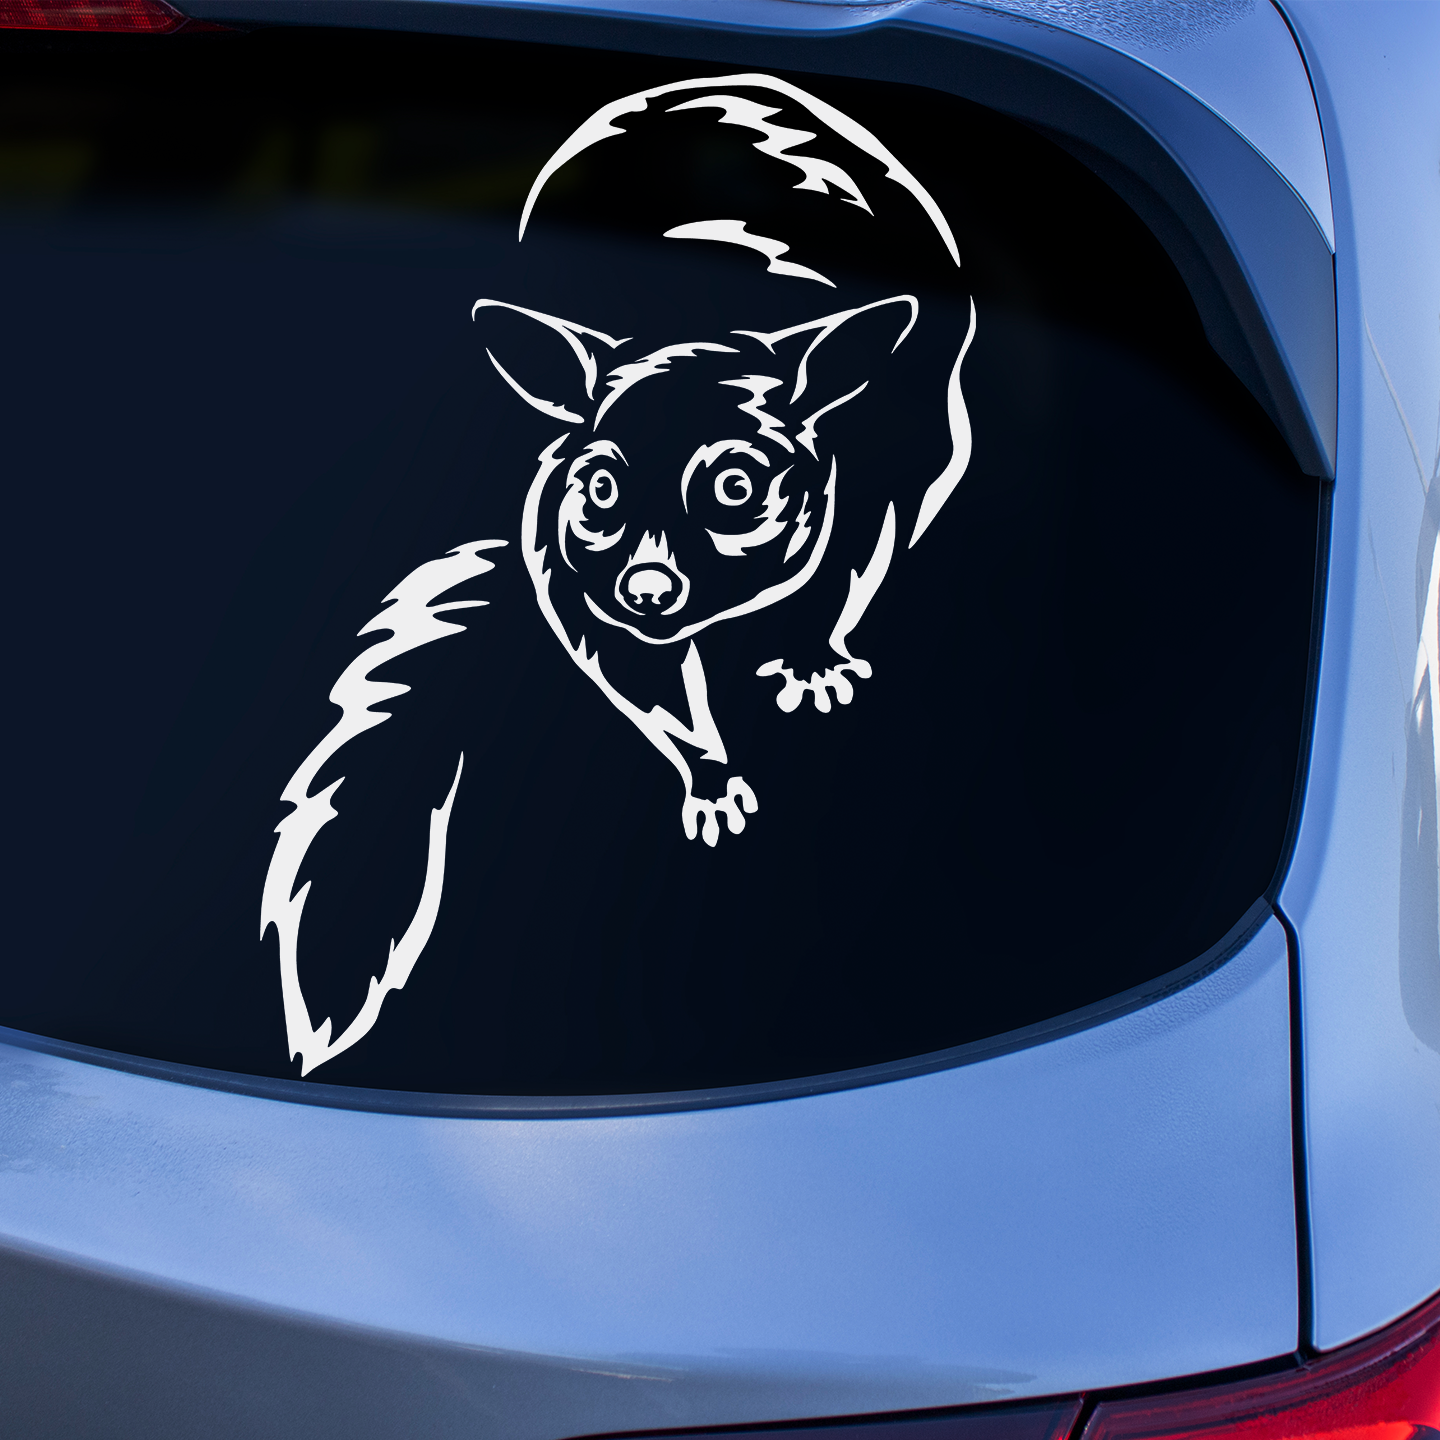 Possum Sticker